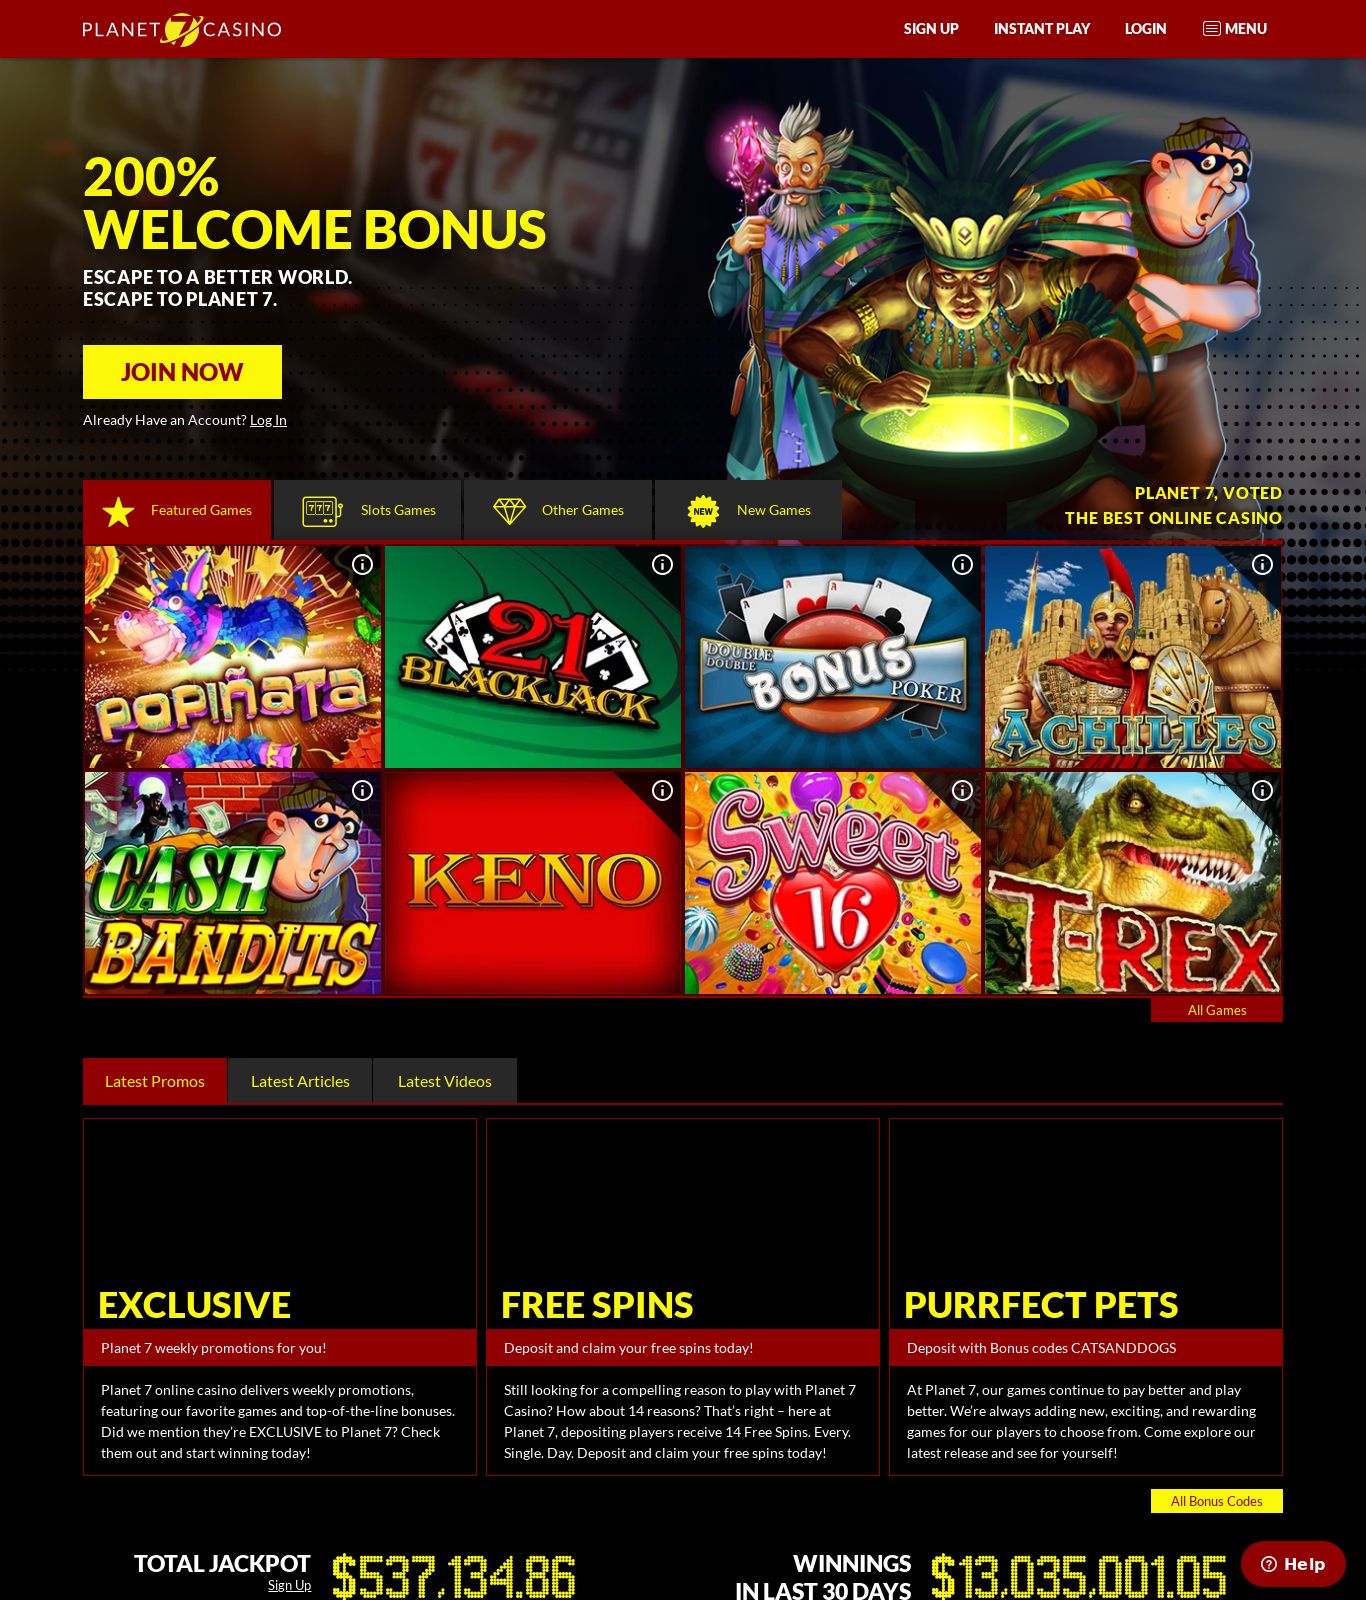 Planet 7 casino $150 no deposit bonus codes 2019